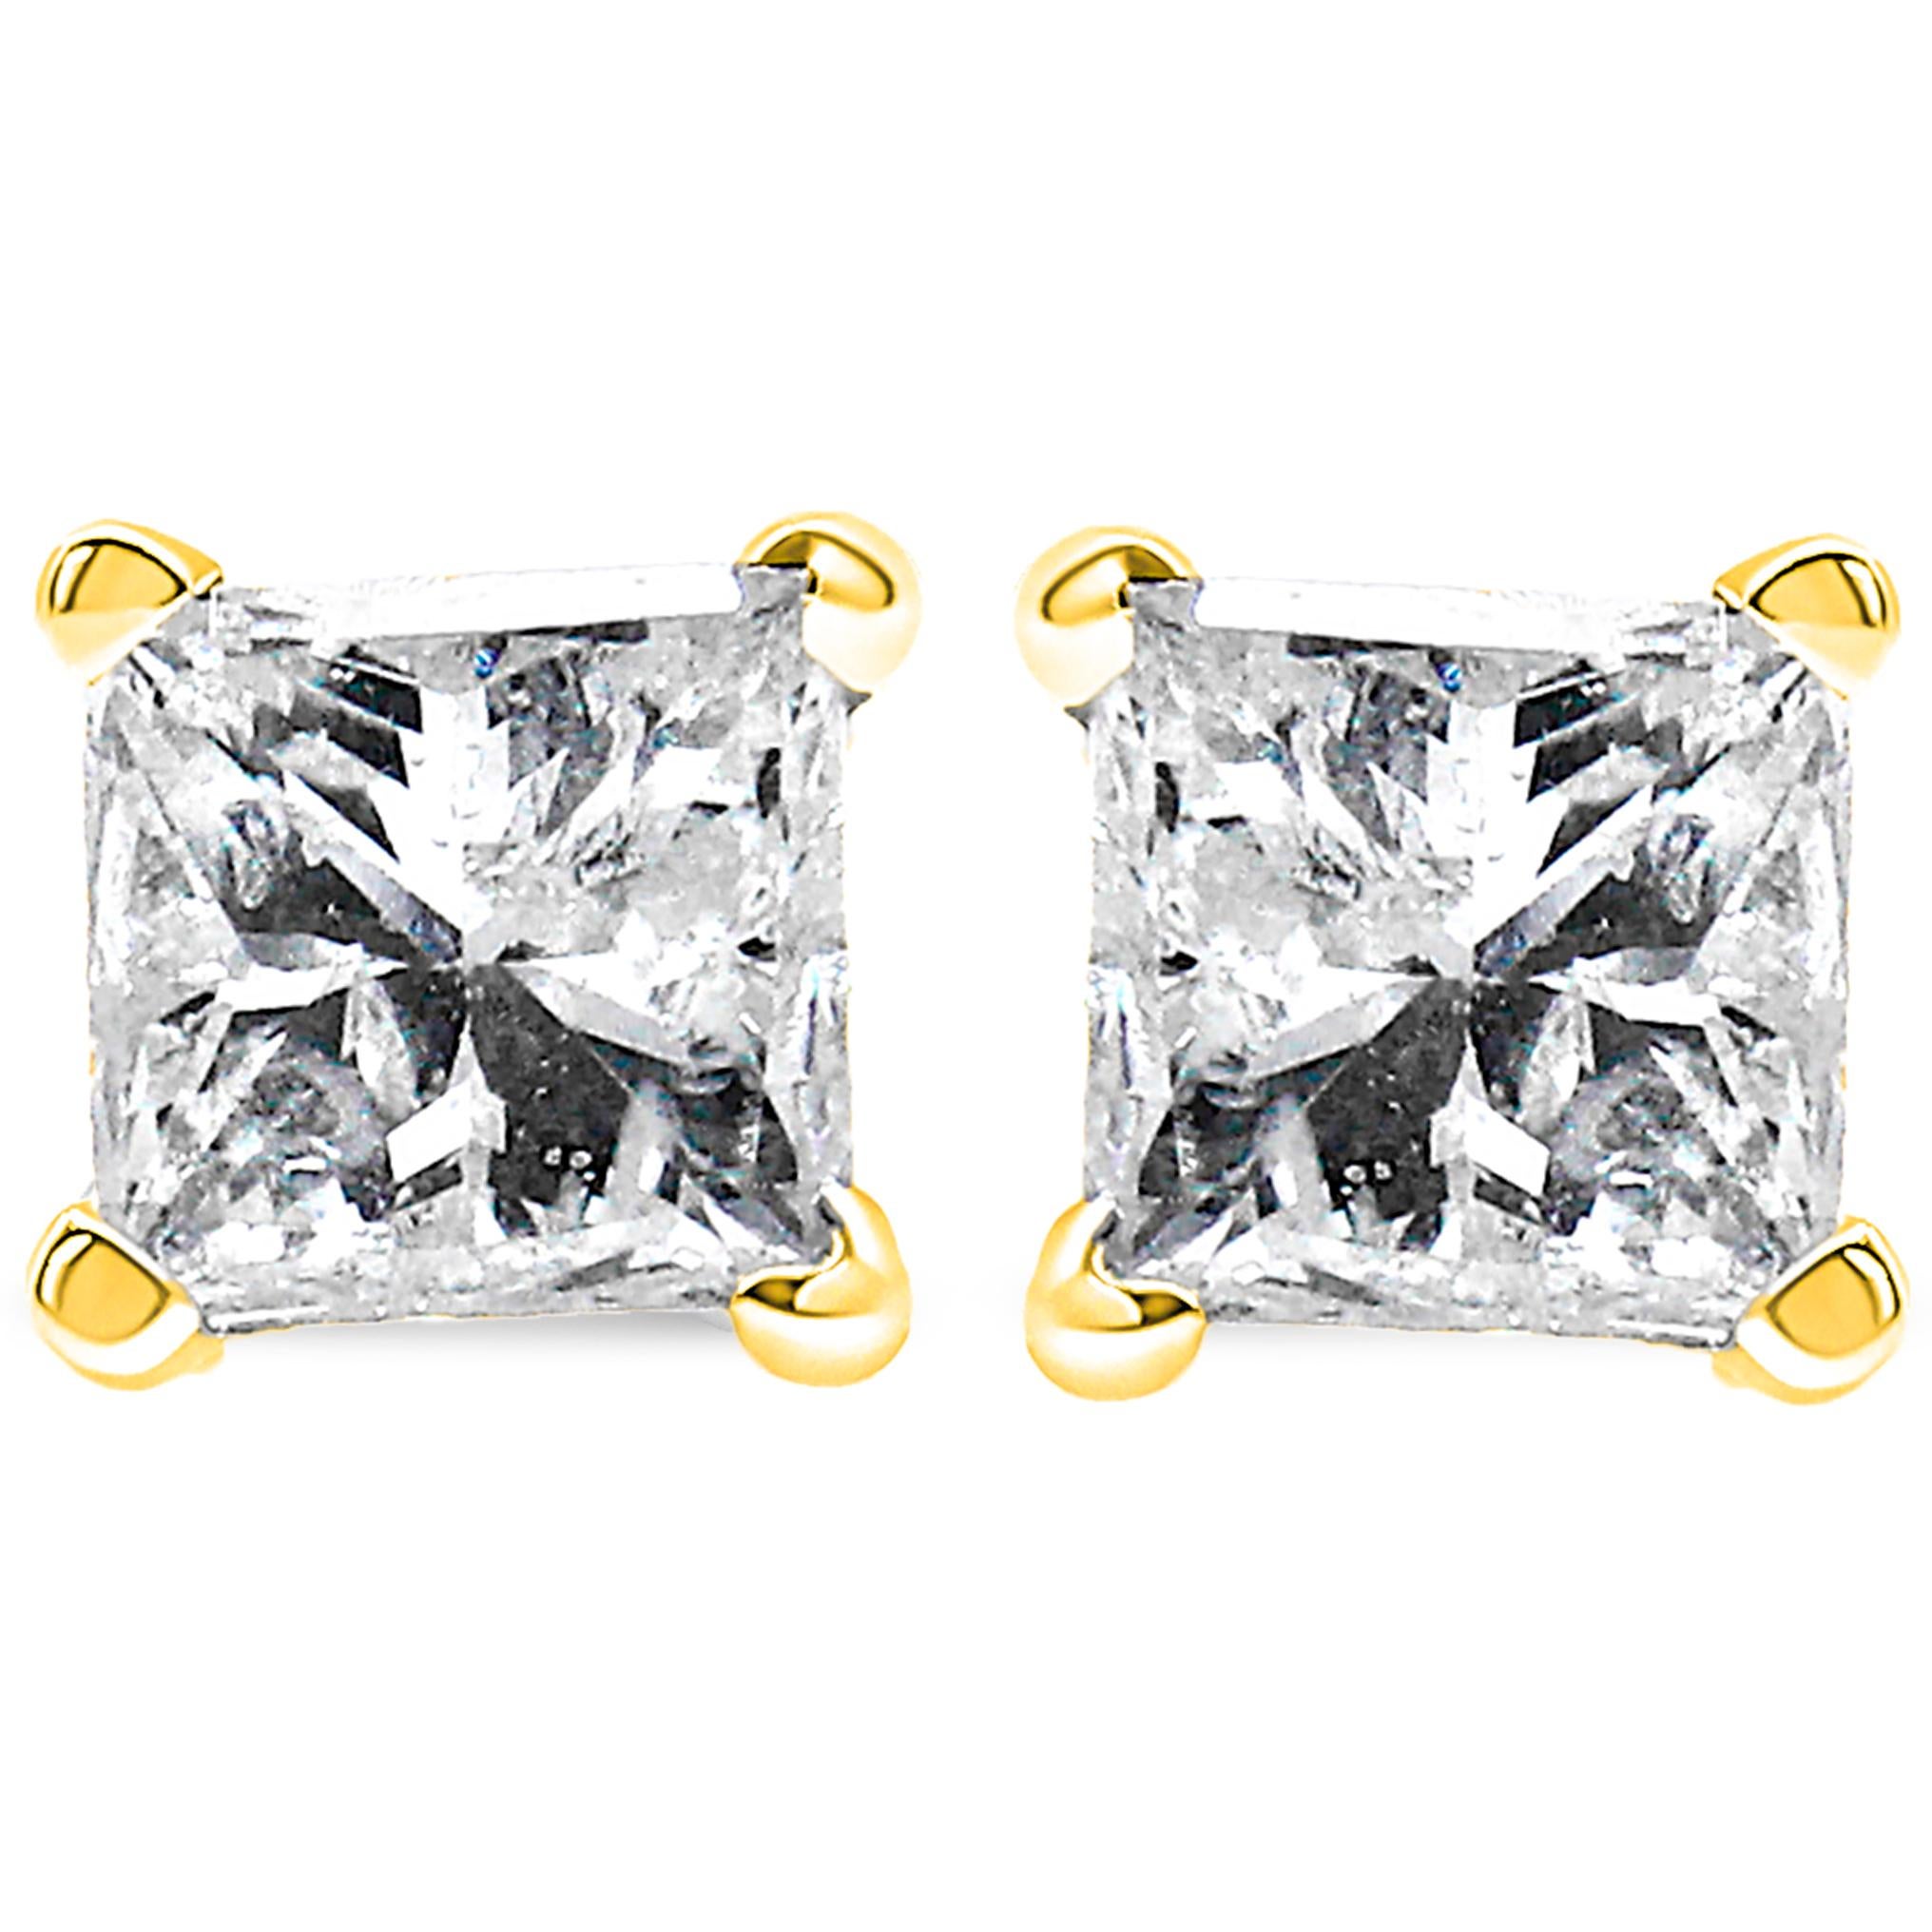 Verleihen Sie Ihrem Alltagslook einen Hauch von Luxus mit diesen wunderschönen IGI-zertifizierten Diamant-Ohrsteckern mit Prinzessinnenschliff. Jeder Ohrring besteht aus einem natürlichen Diamanten mit einem Gewicht von 1/2 Karat, geschliffen in